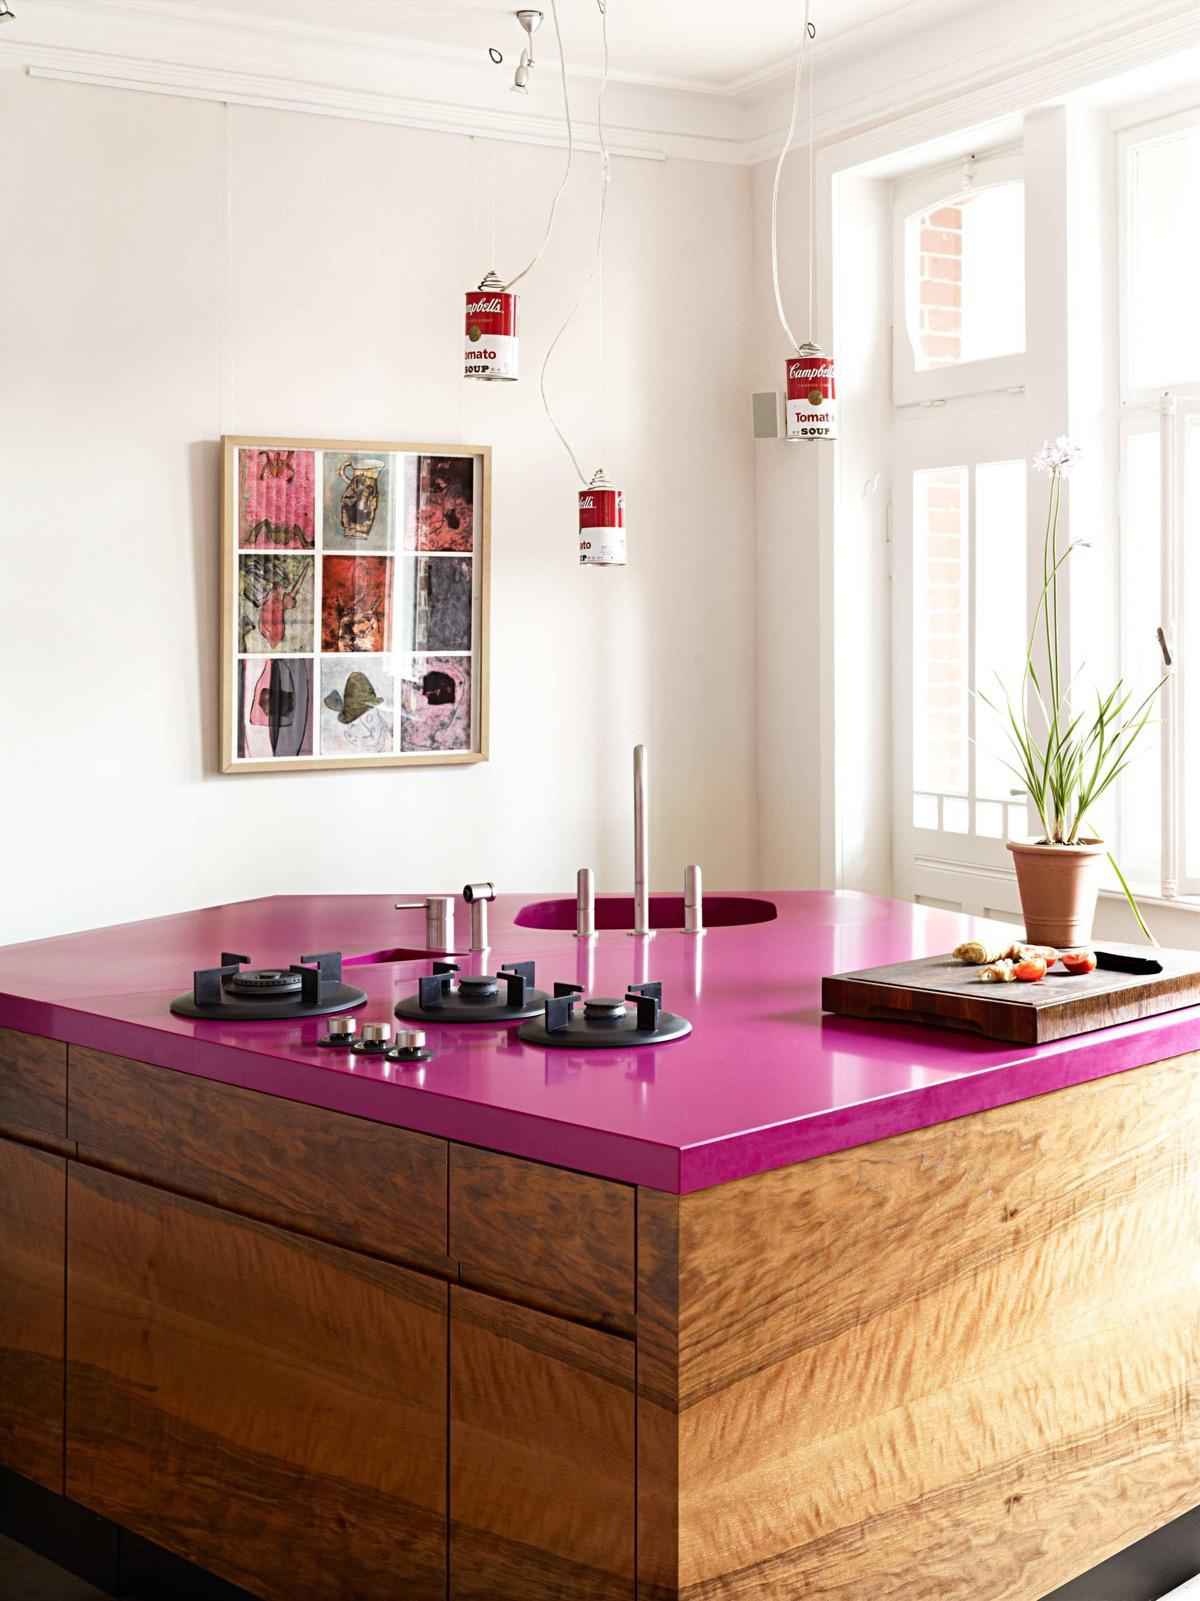 20 идей кухонь в розовом цвете 35 | Дока-Мастер